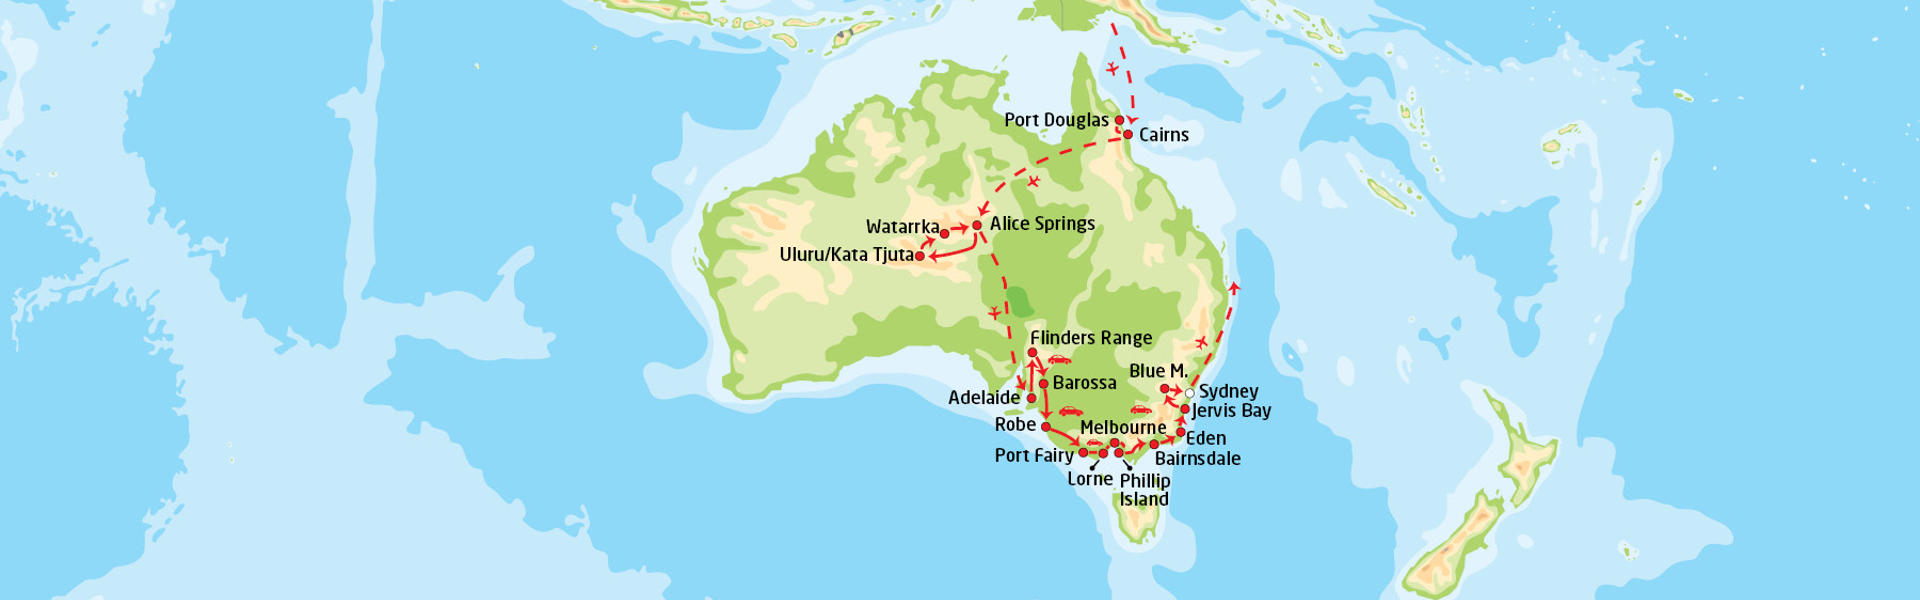 Australias enestående høydepunkter | Reiserute